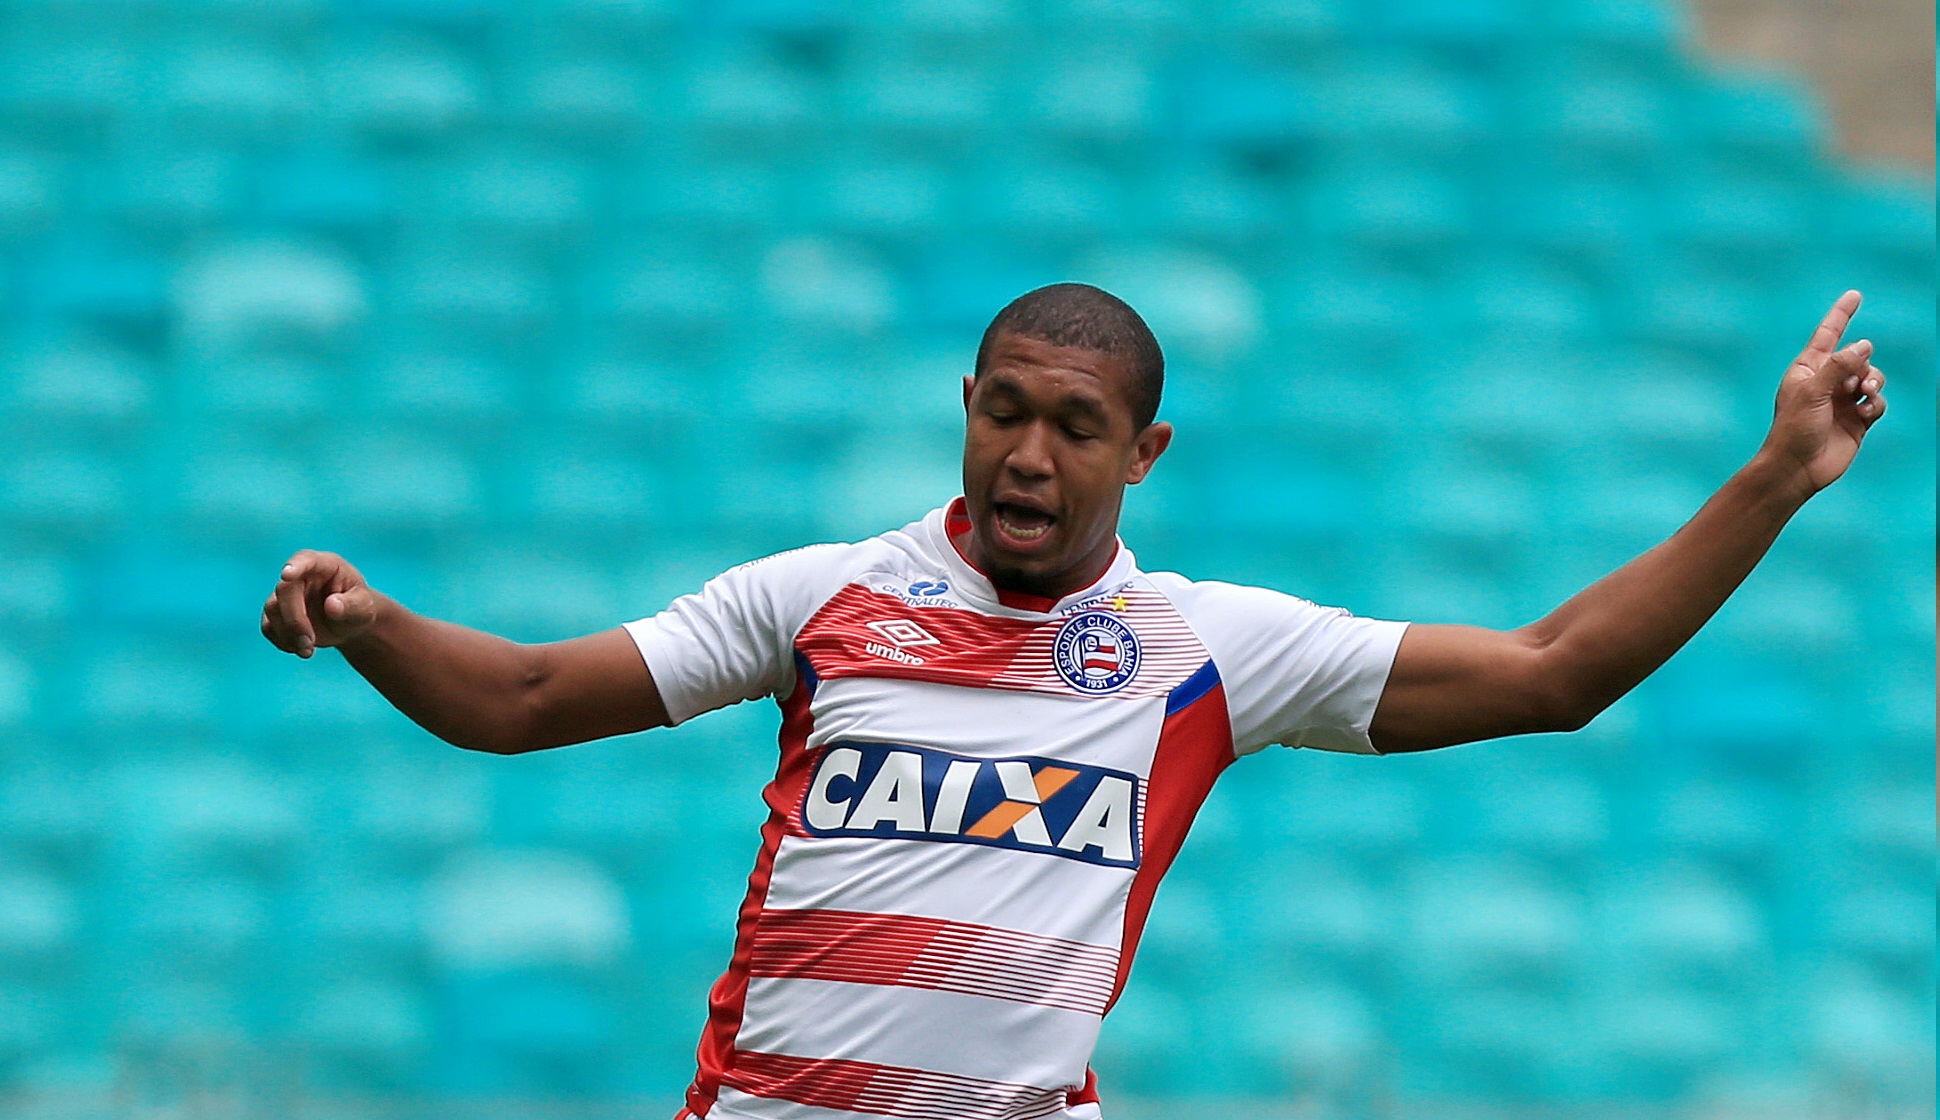 Atacante Rodrigão lamenta goleada sofrida para o Atlético-PR: “tinha que ter um pouco de tranquilidade”